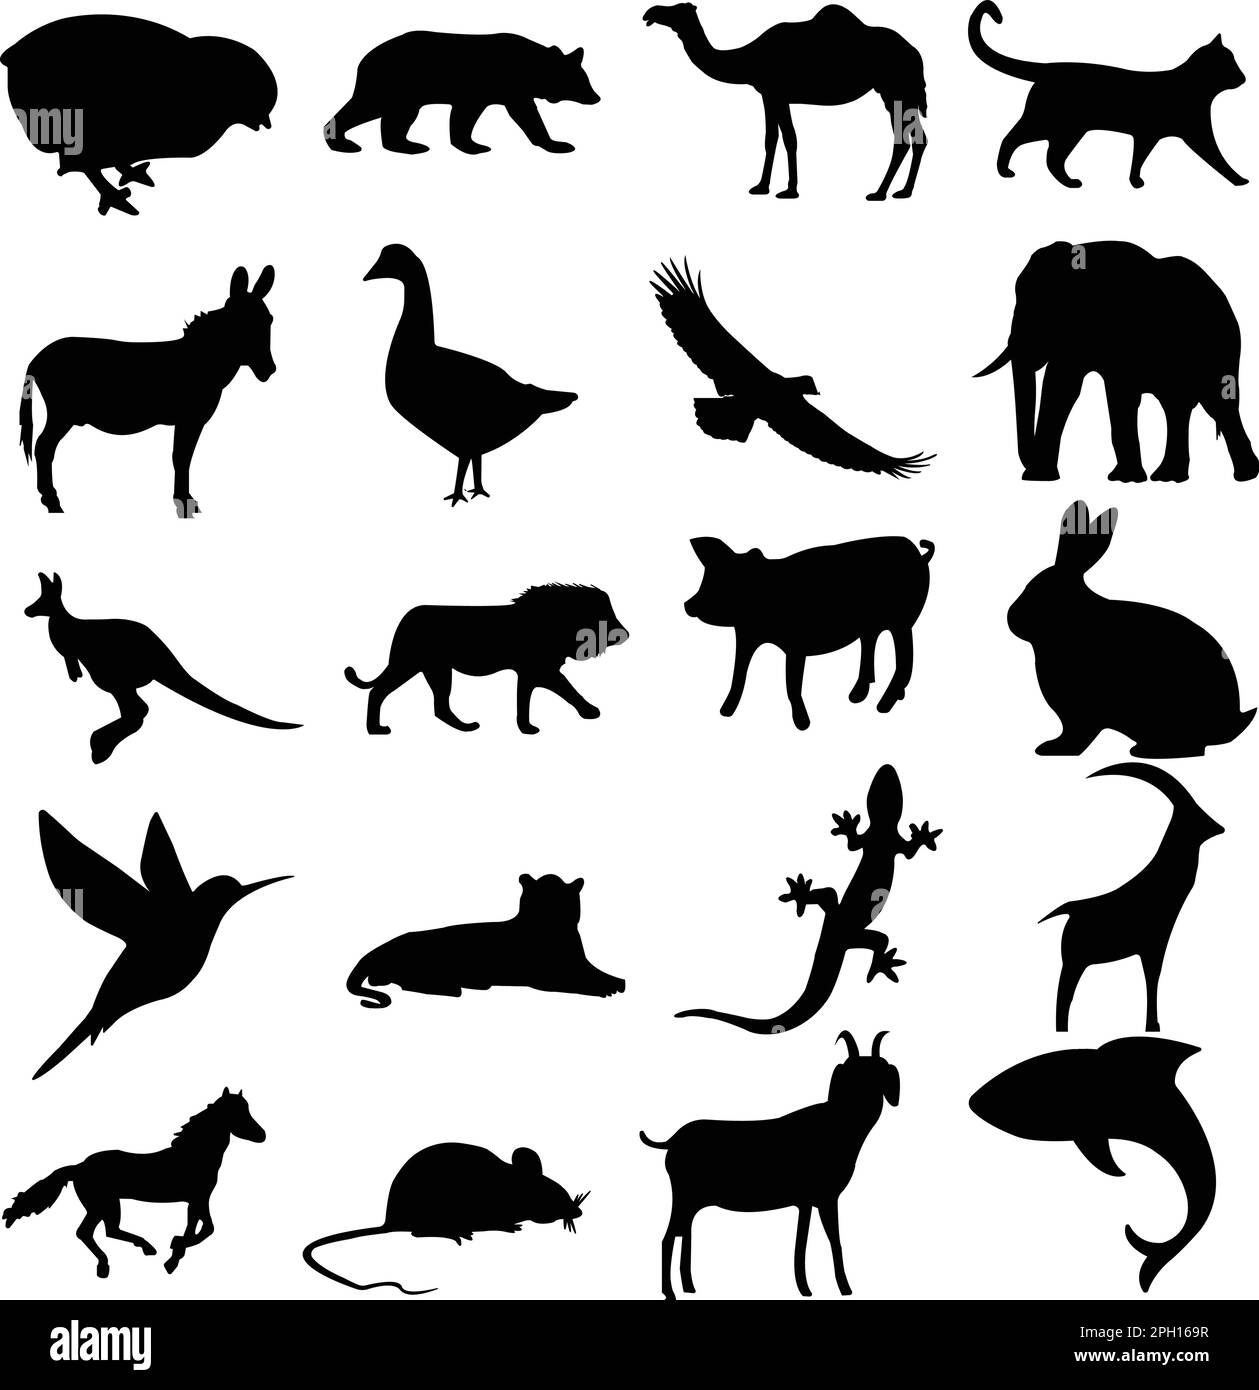 Ein Set von Tiersilhouetten. känguru, Löwe, Schwein, Kamel, hier. Spatz, Taube, Eidechse, Dall-Schafe, Ratte, Delfin, Esel, Elefant, Ente, Adler Stock Vektor